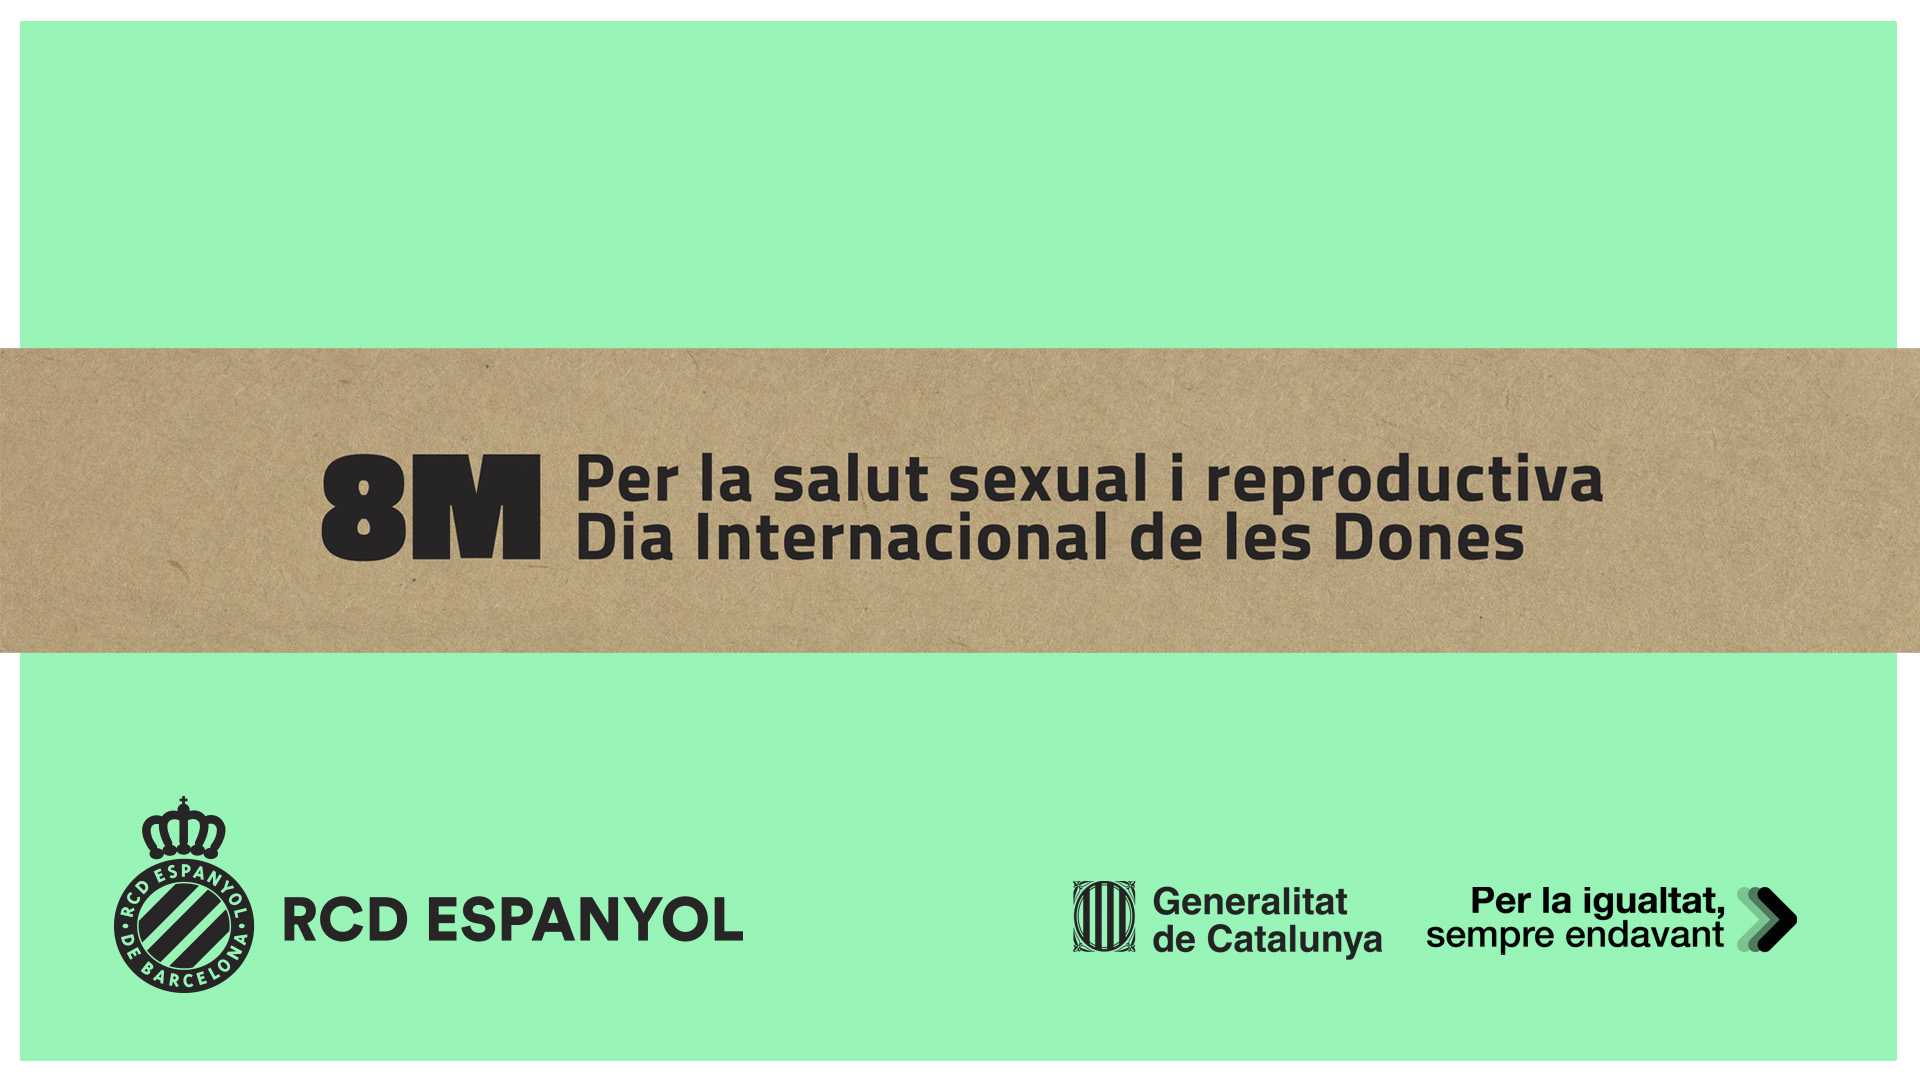 El RCD Espanyol se suma al Día Internacional de las Mujeres